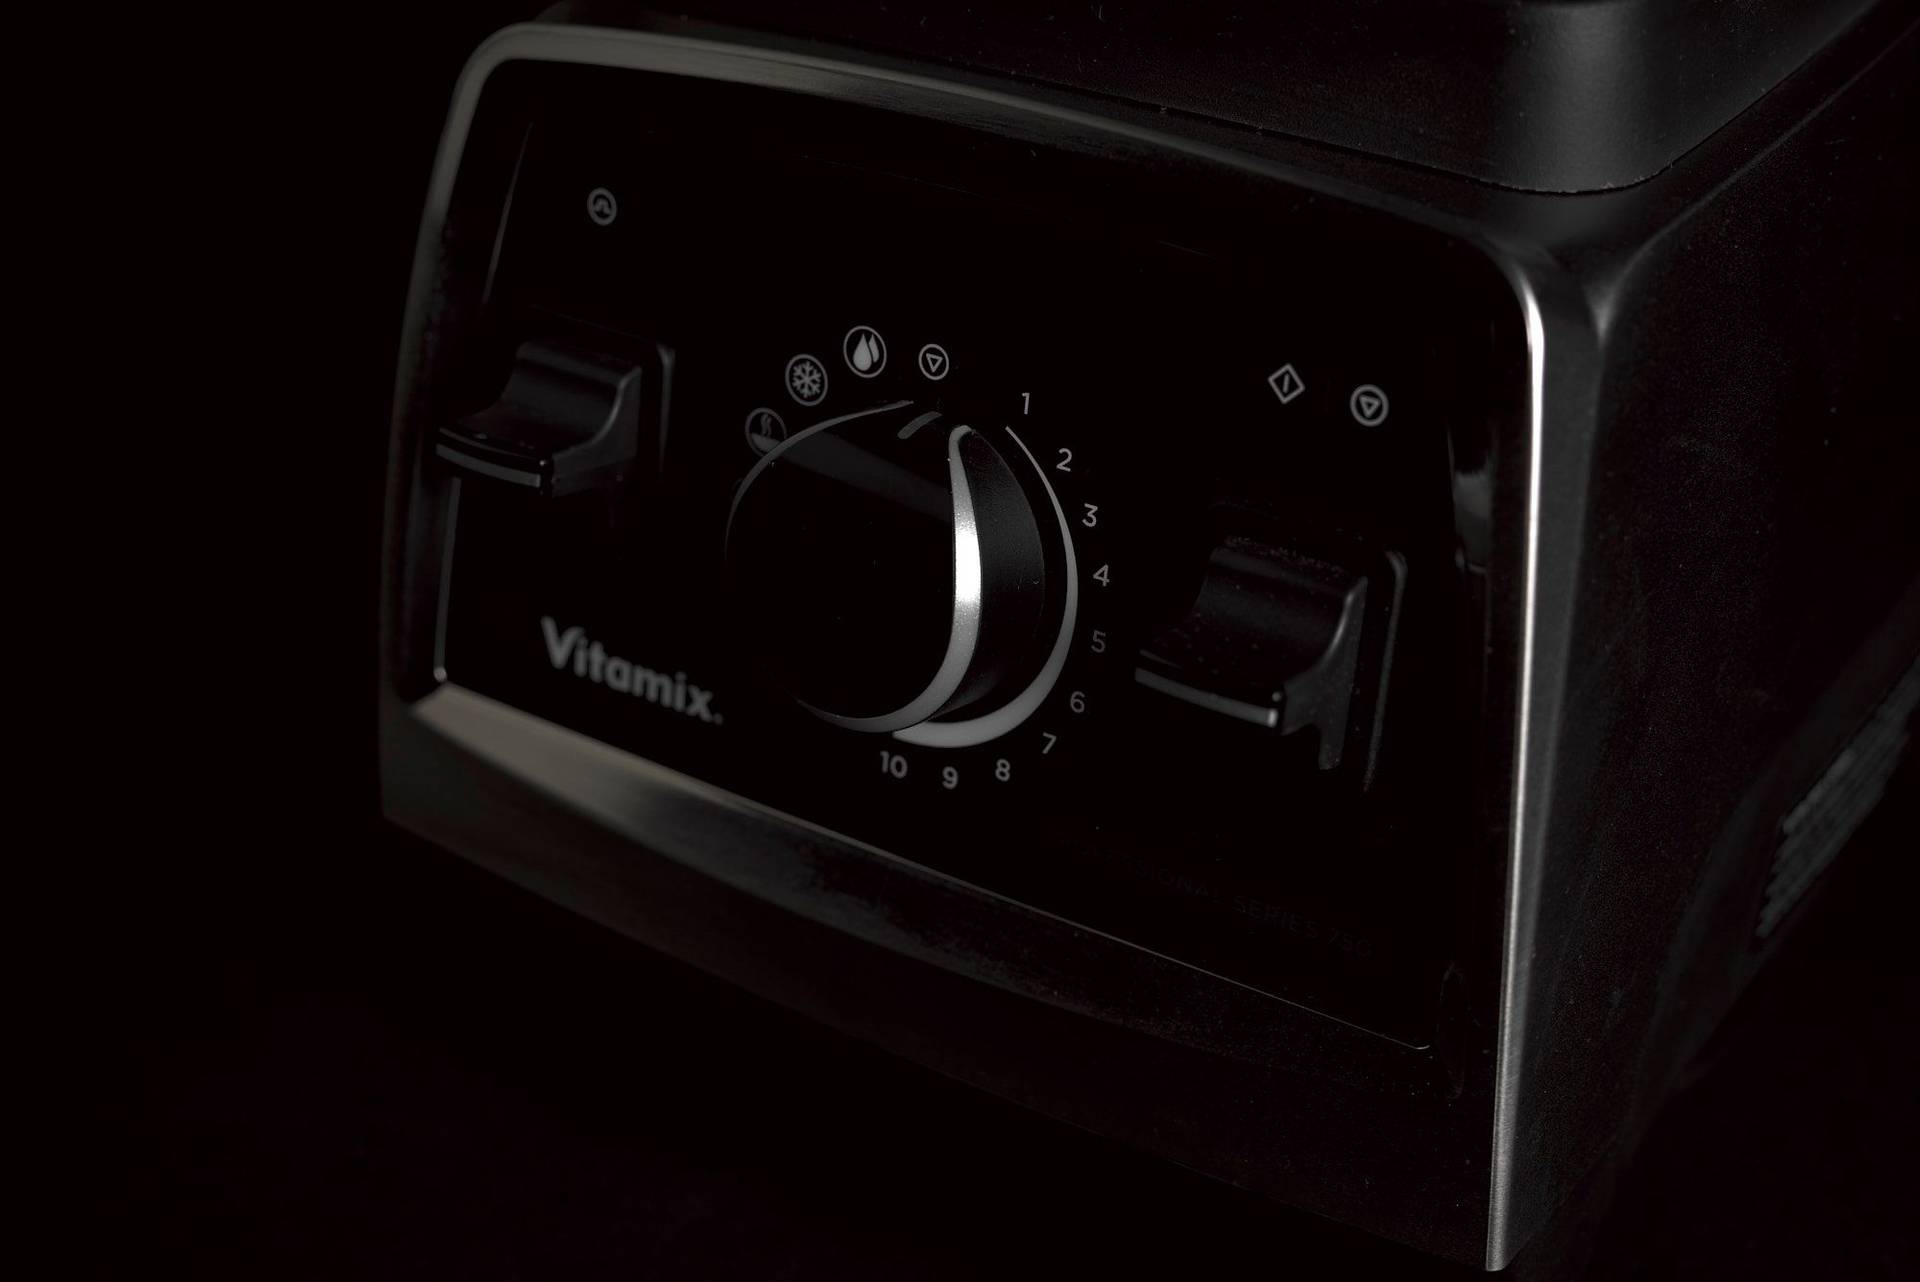 Vitamix Professional Series 750 Küchenmixer auf schwarzem Hintergrund